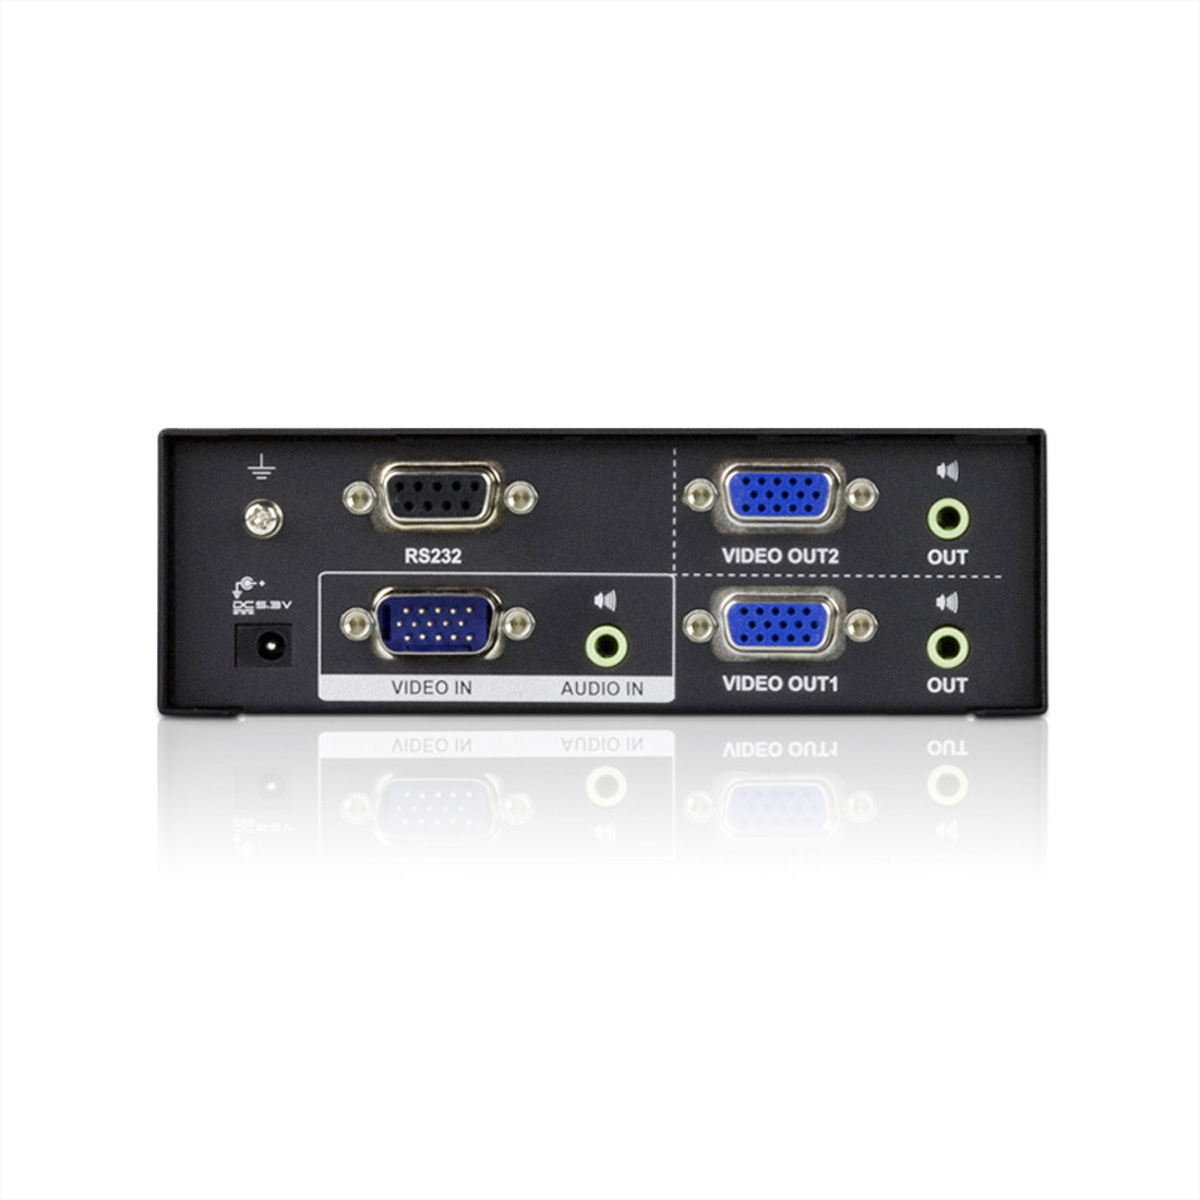 ATEN VS0102 VGA 450MHz, RS232, 2fach Video-Splitter, VGA-Video-Splitter Audio